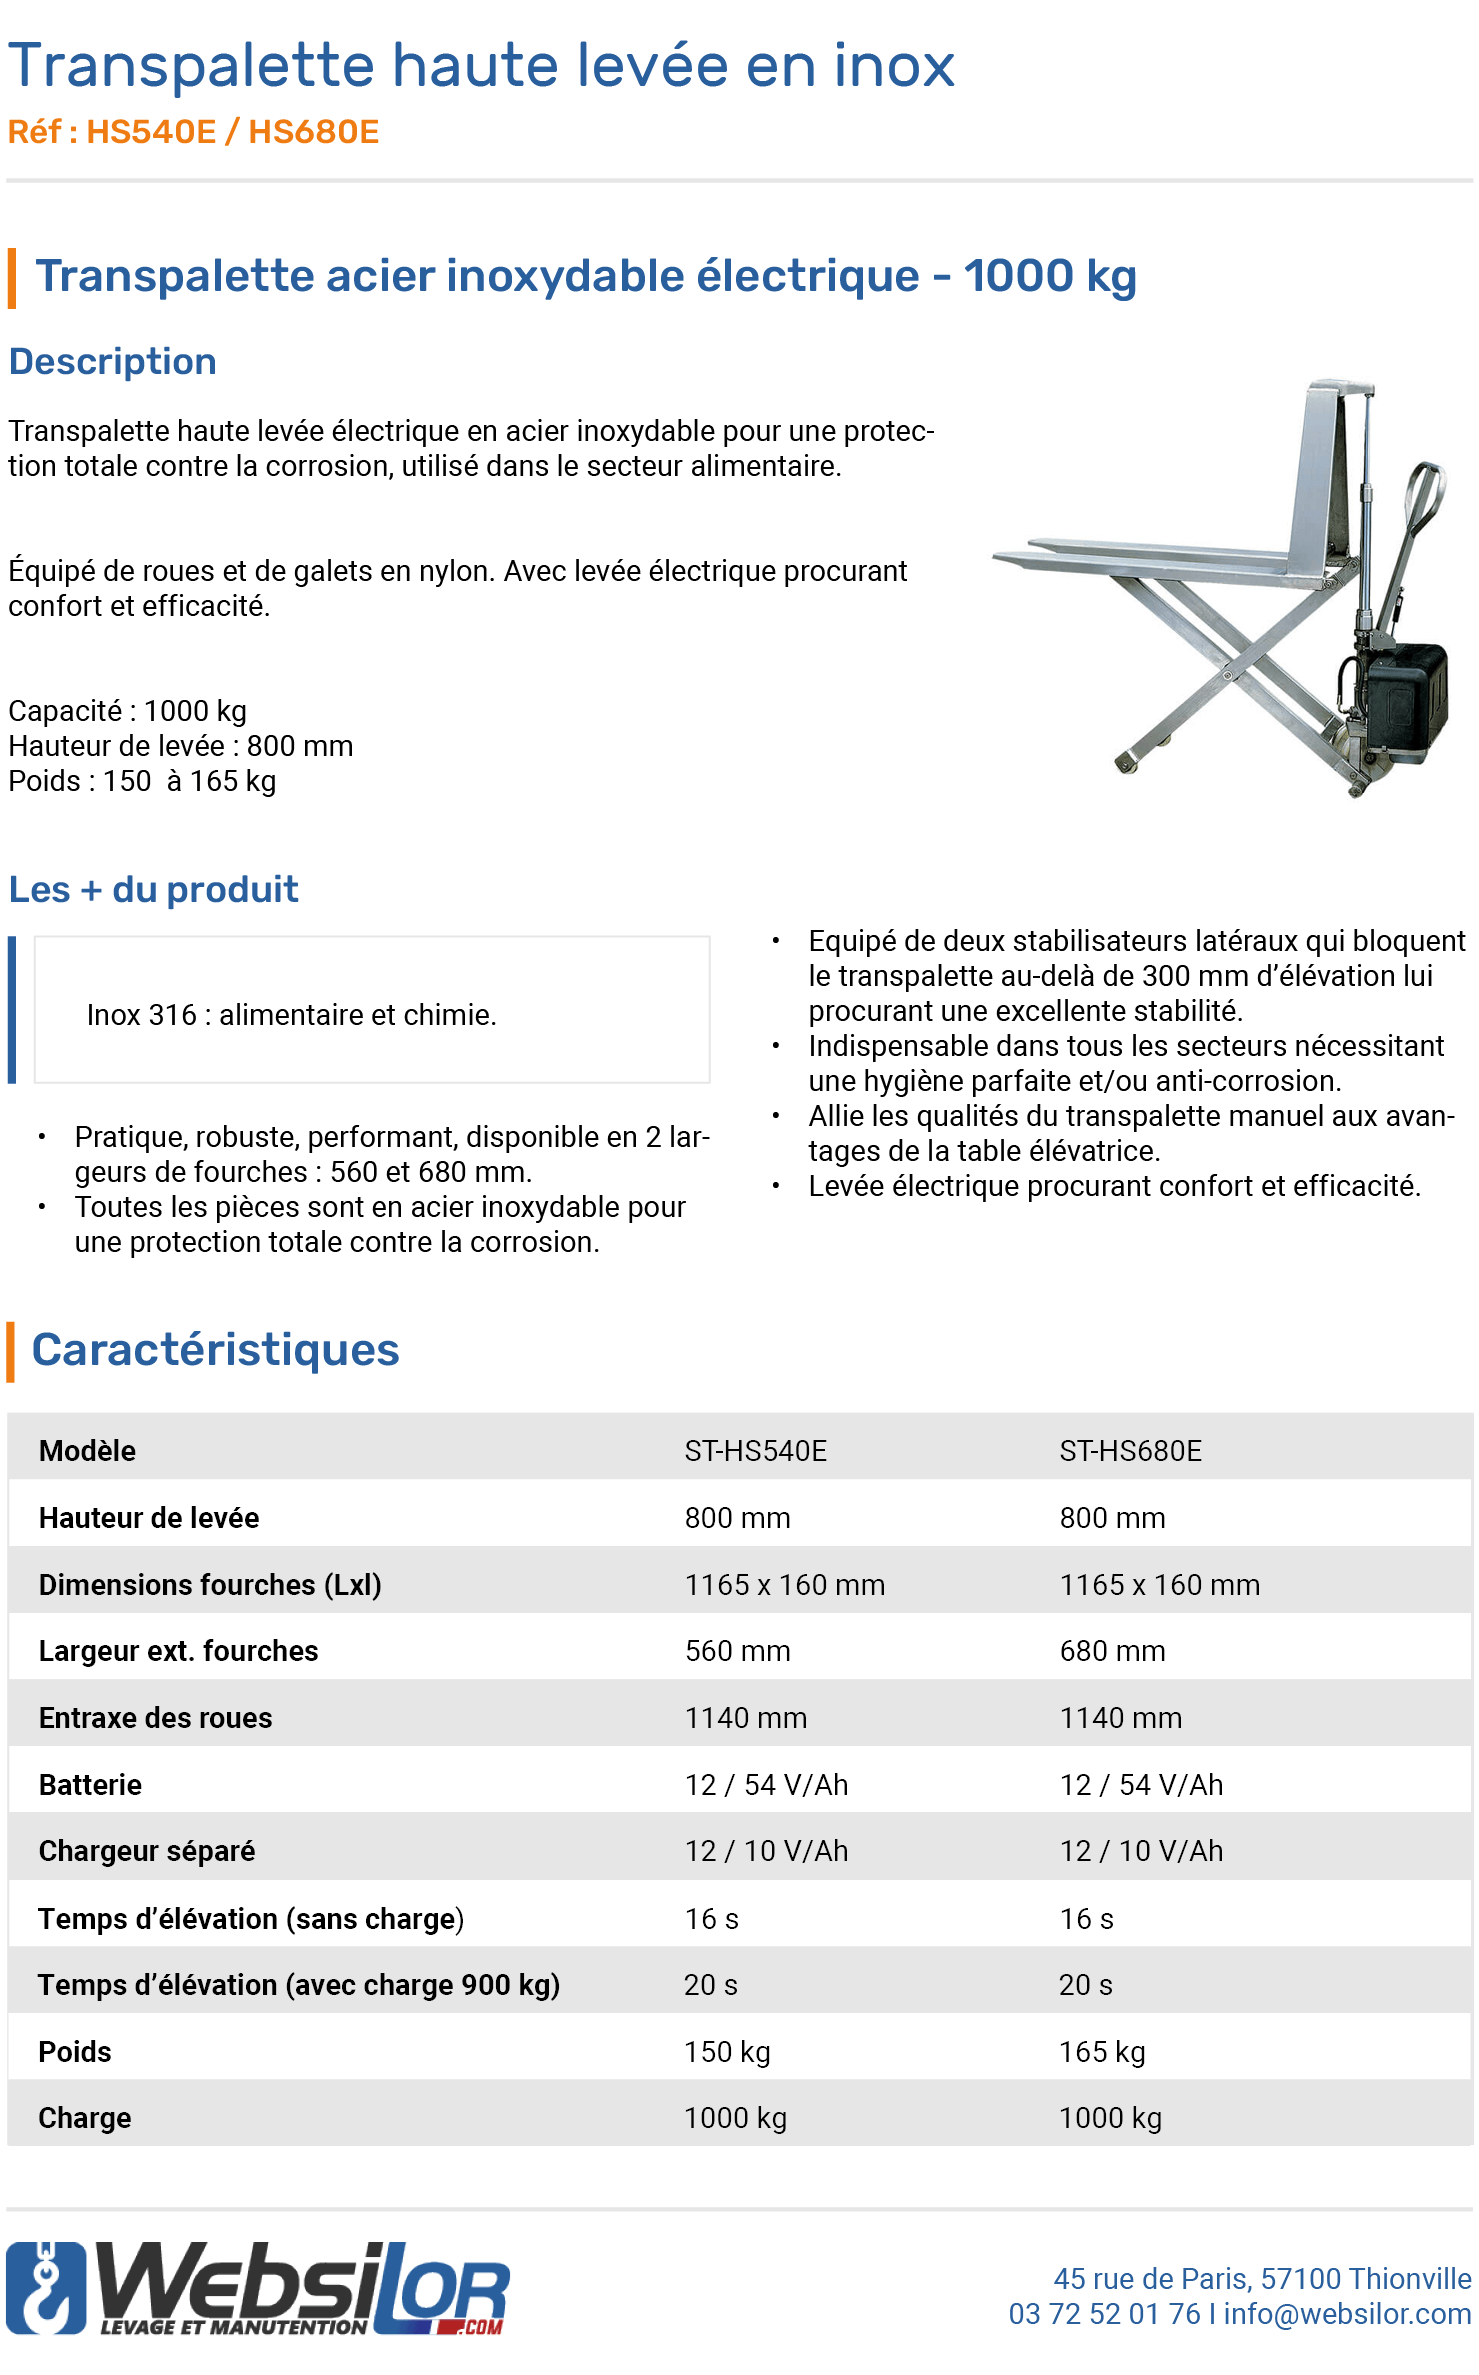 Informations techniques Transpalette haute levée électrique inox 1000 kg